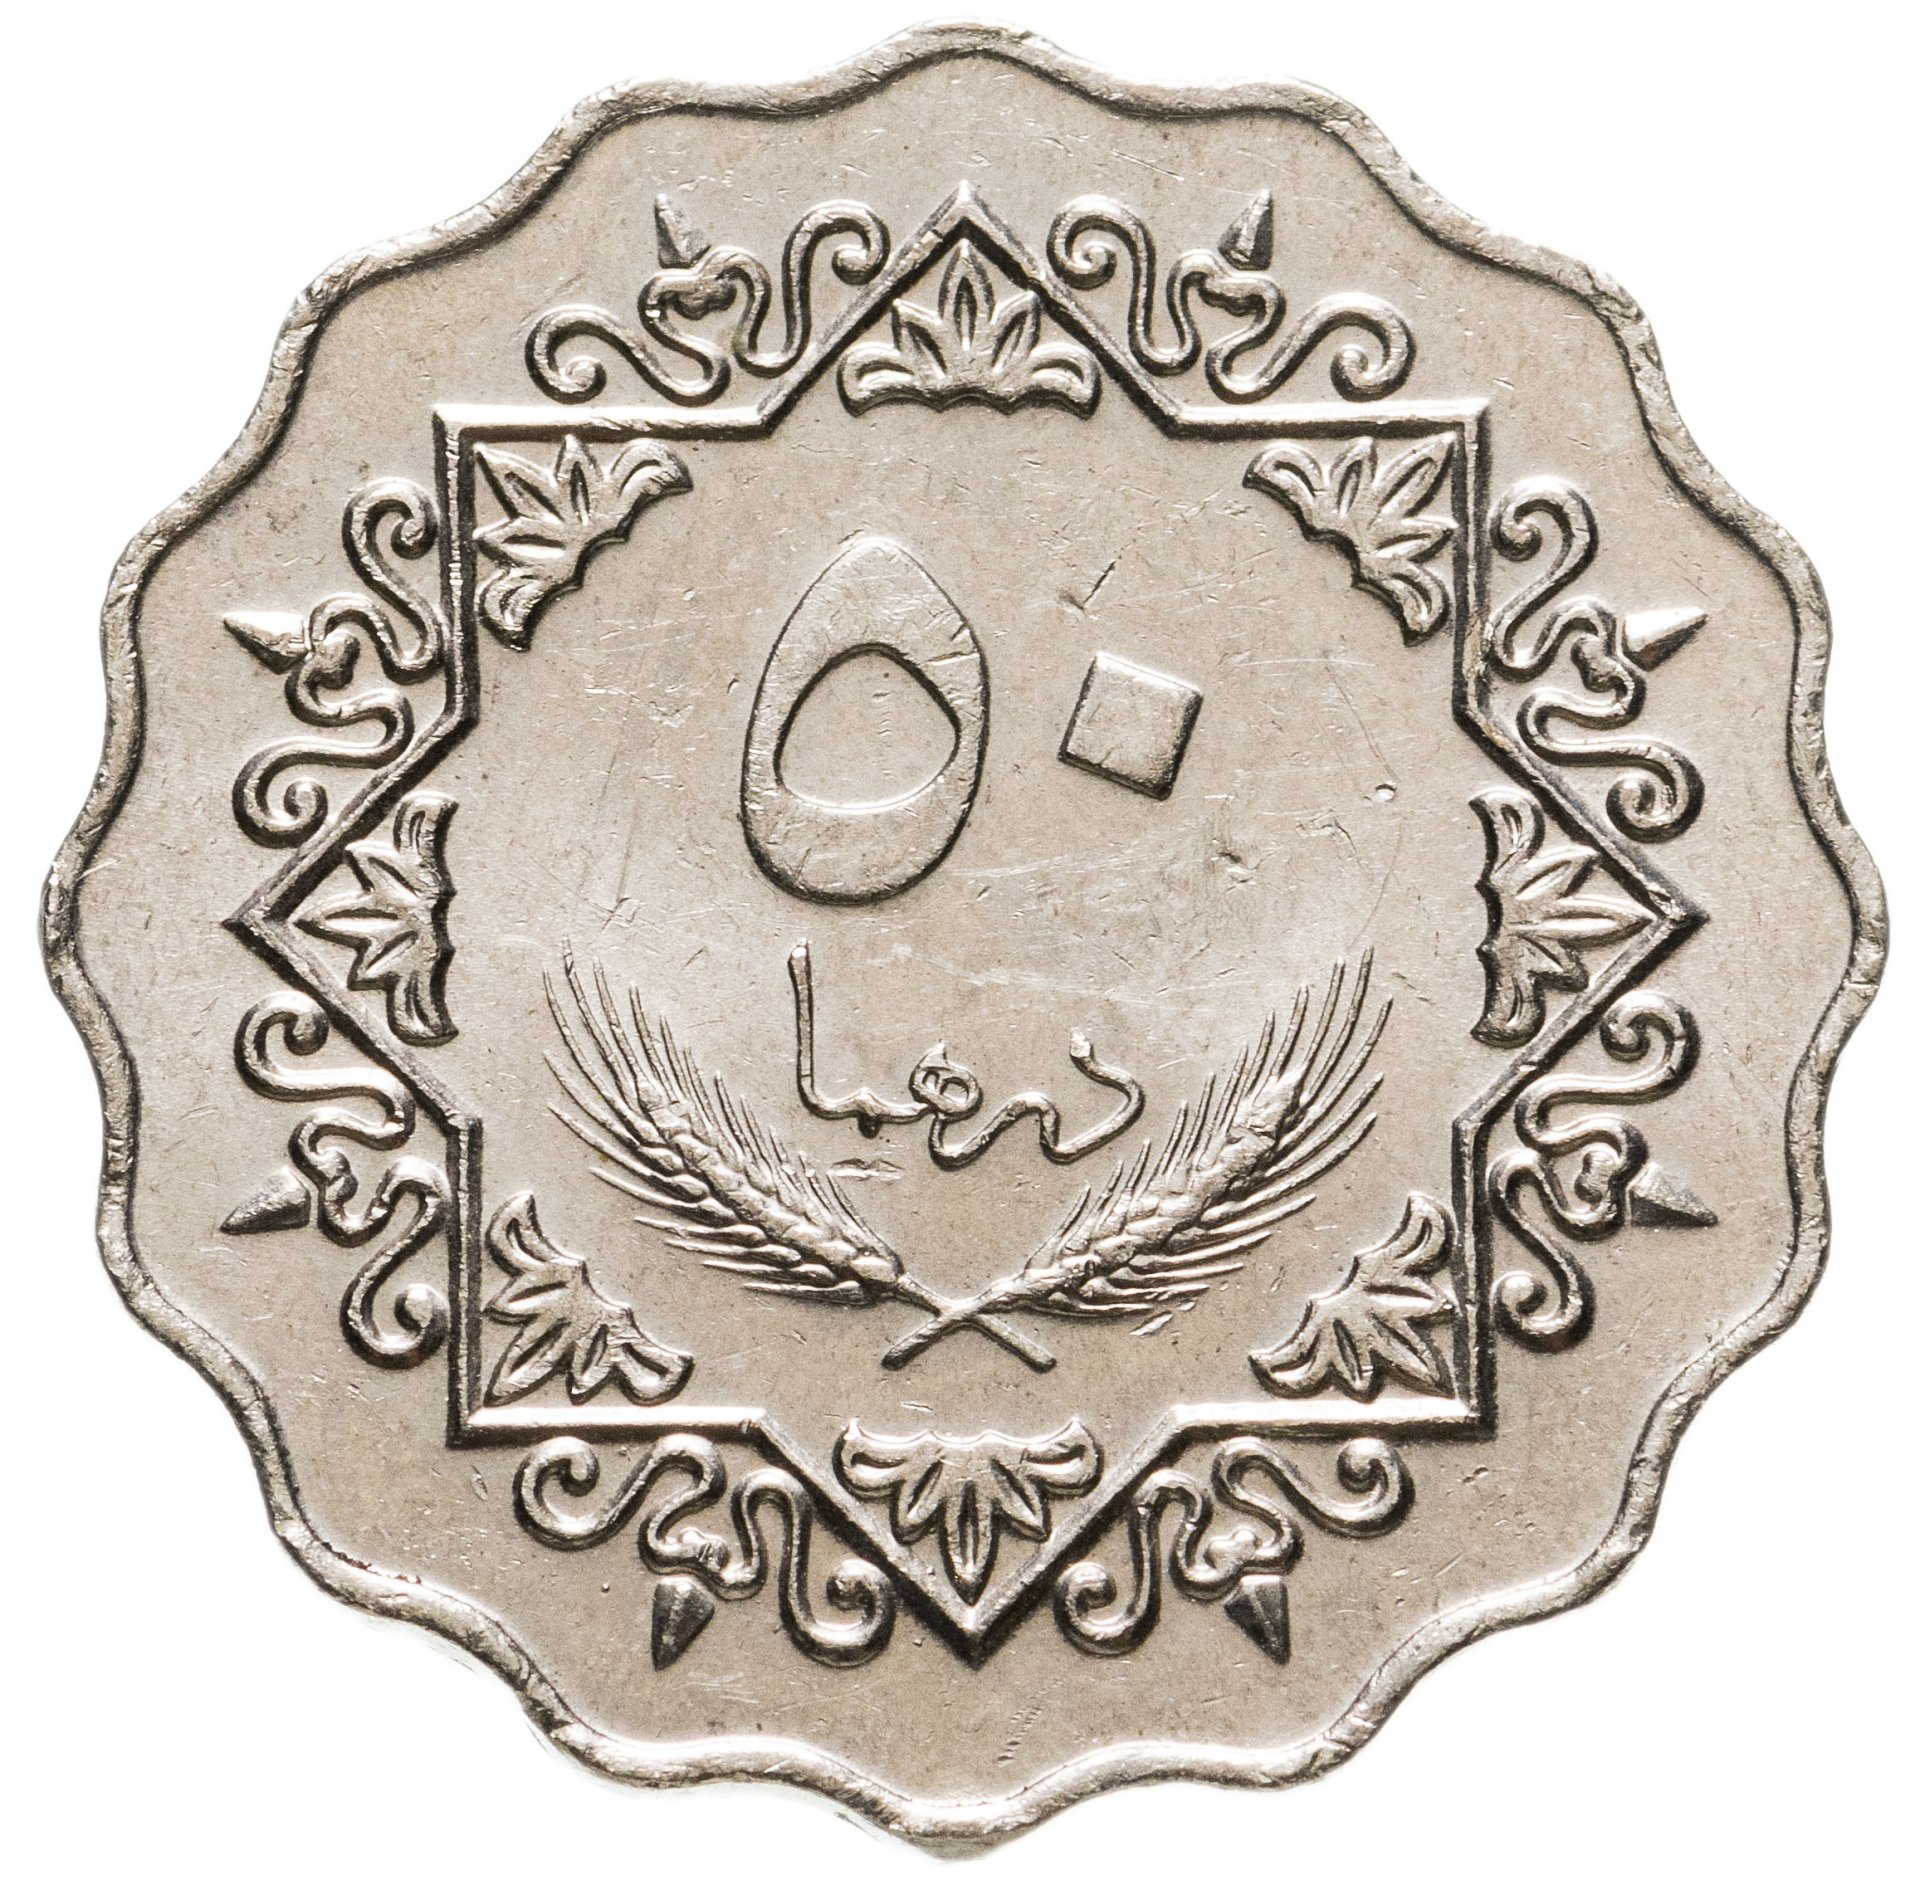 Ливия 50 дирхамов 1979. Монета с арабской вязью 50. Монеты ливийской Джамахирии. Старинные арабские монеты. 4500 дирхам